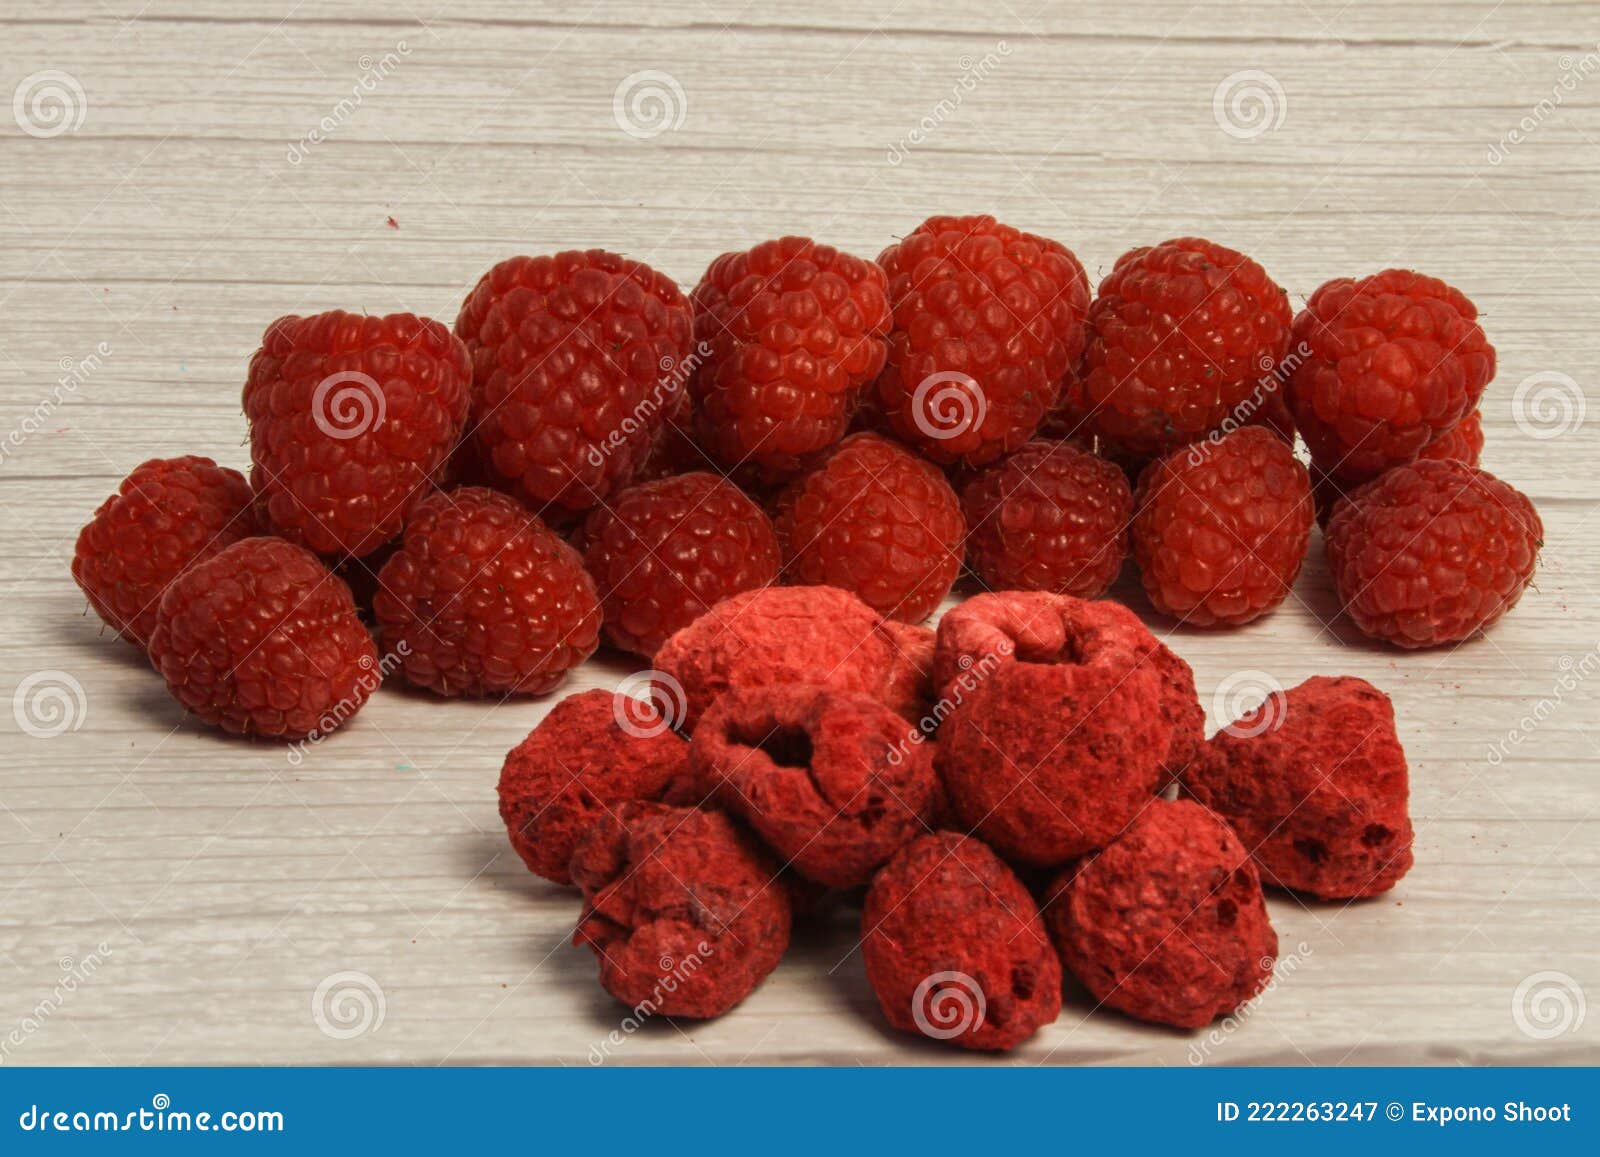 树莓图片素材-编号39721702-图行天下